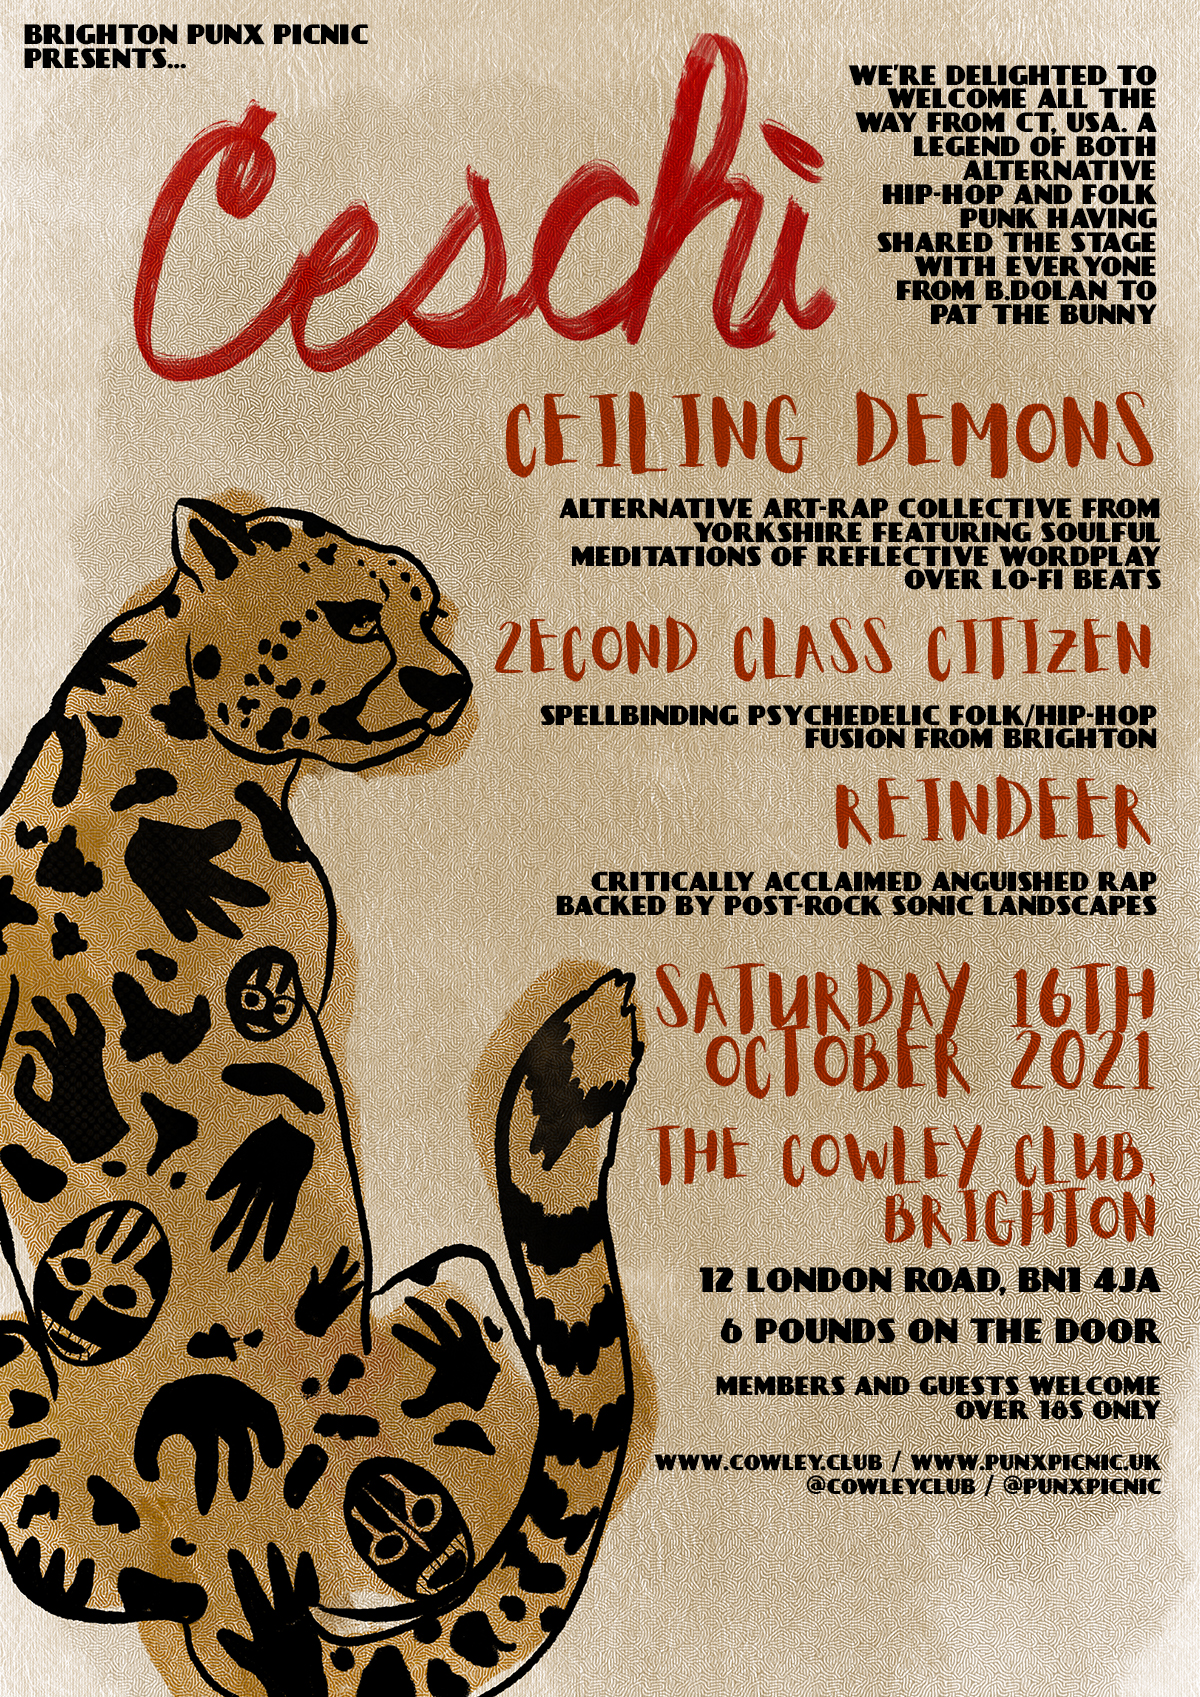 Ceschi / Ceiling Demons / 2econd Class Citizen / Reindeer